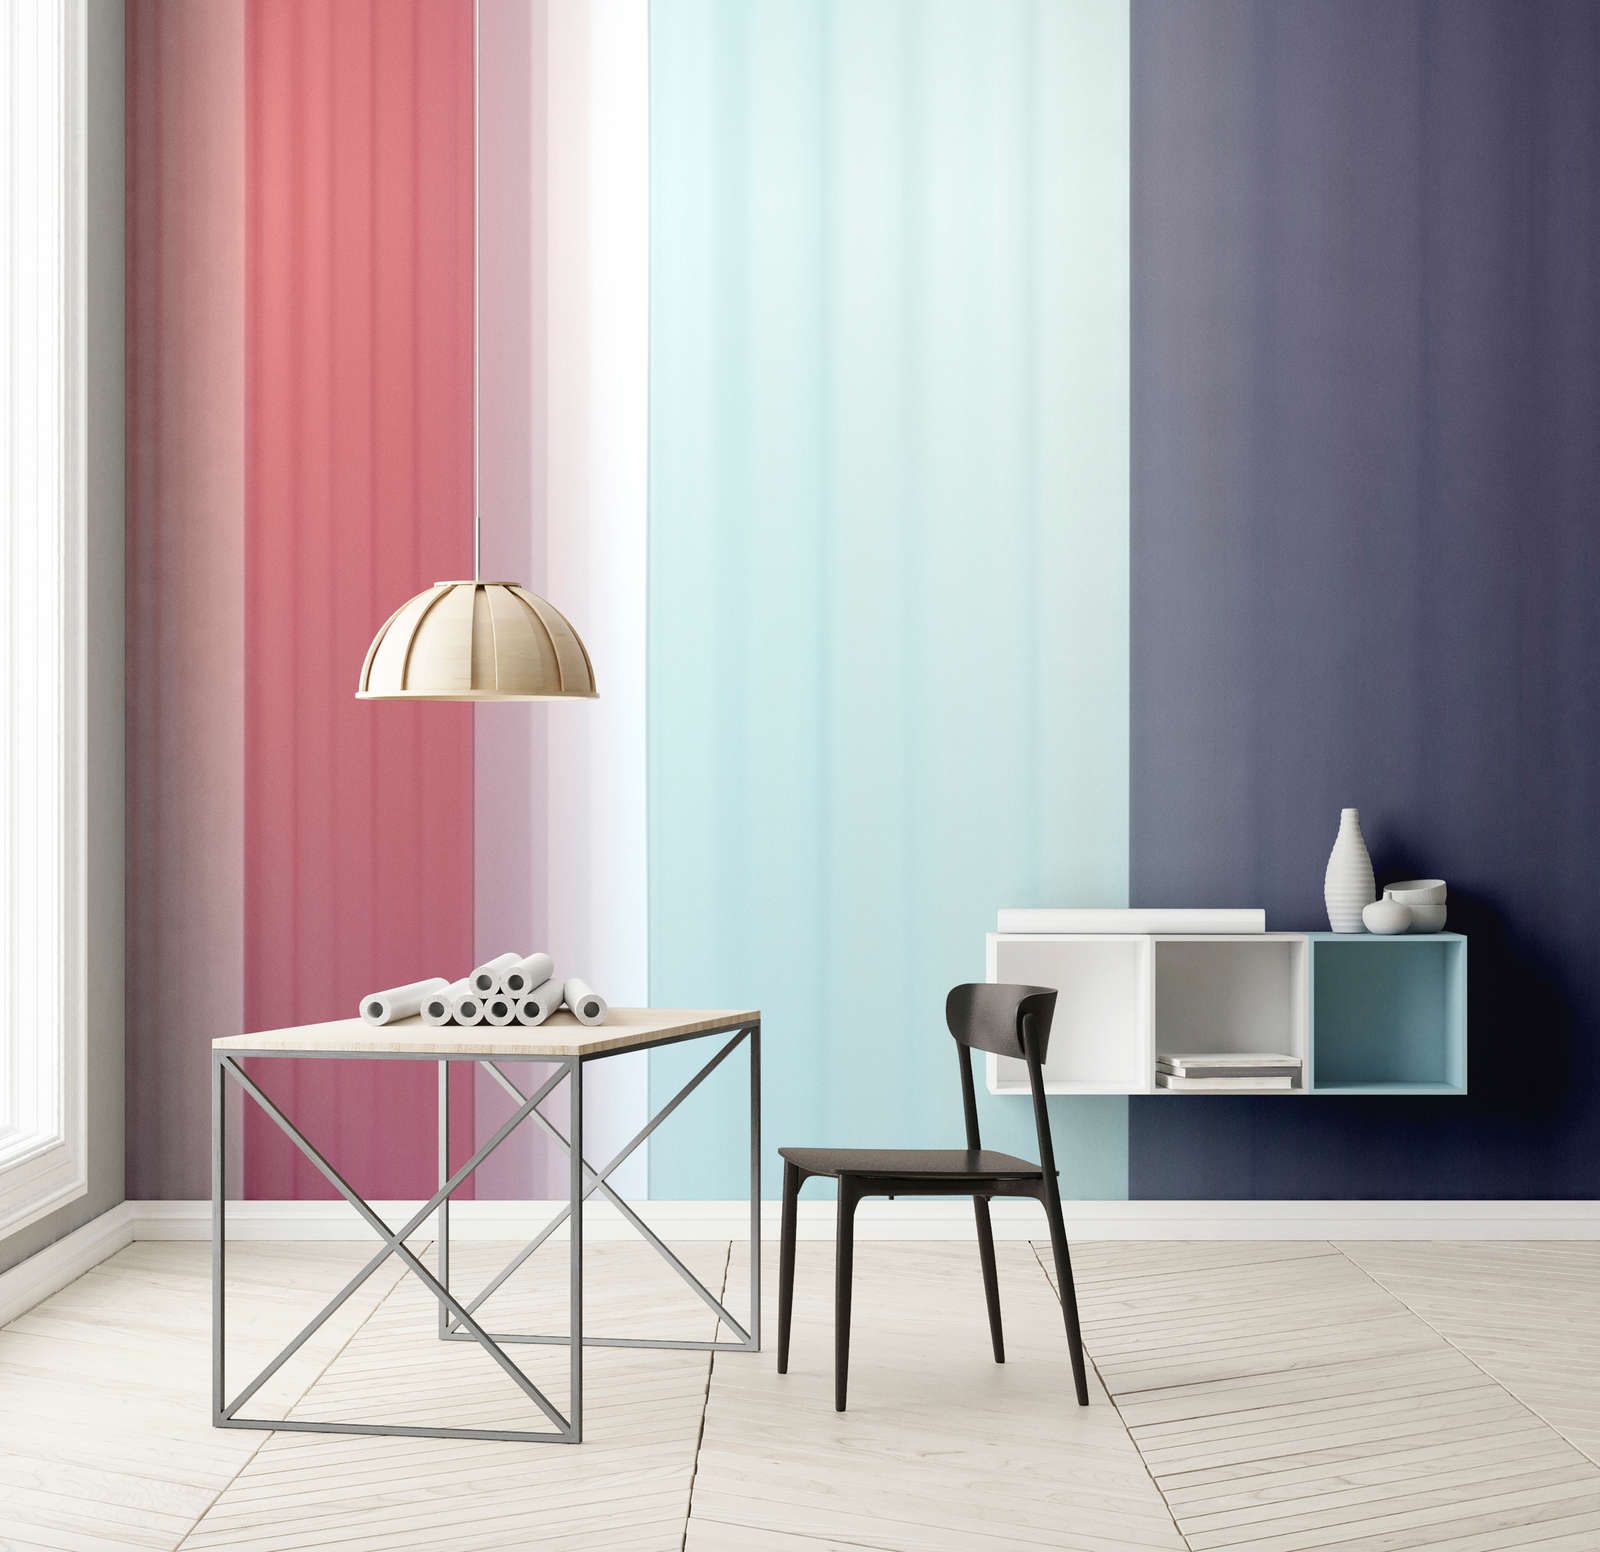             Digital behang »co-colores 2« - kleurverloop met strepen - roze, lichtblauw donkerblauw | licht structuurvlies
        